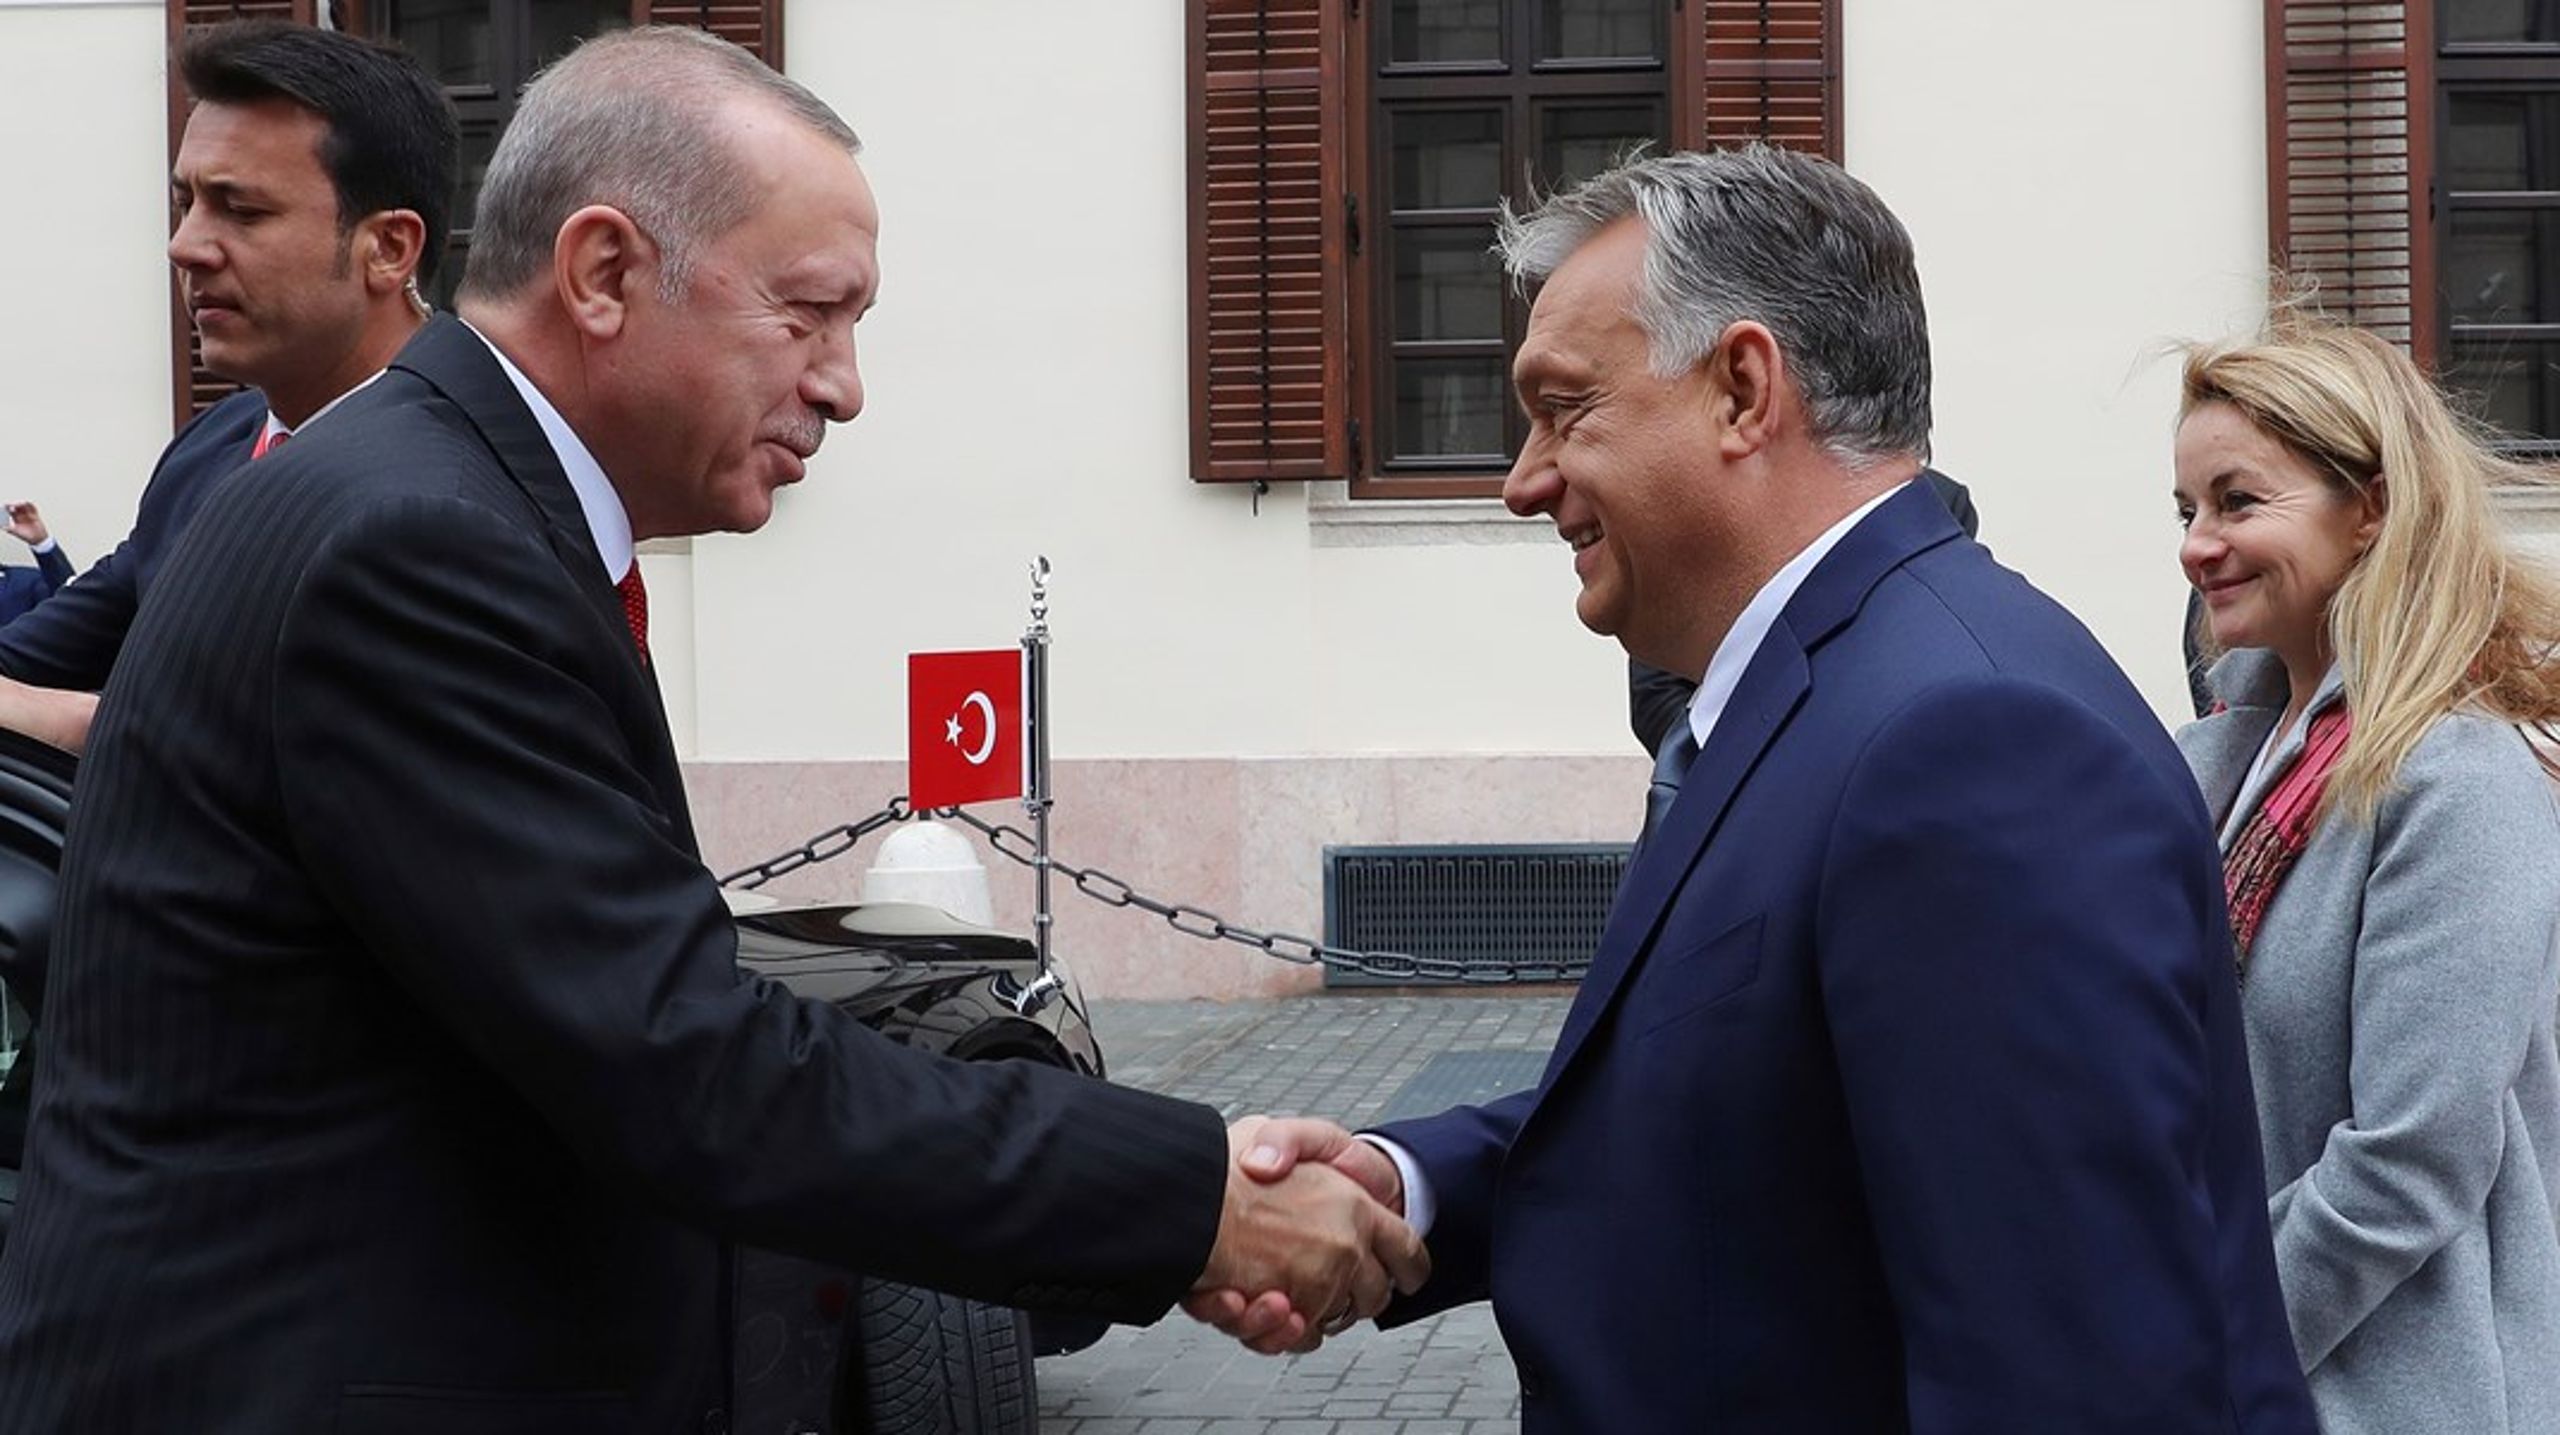 Orbán och Erdogan, två Putin in spe, har under många år lett sina länder i en alltmer auktoritär riktning, skriver debattören.